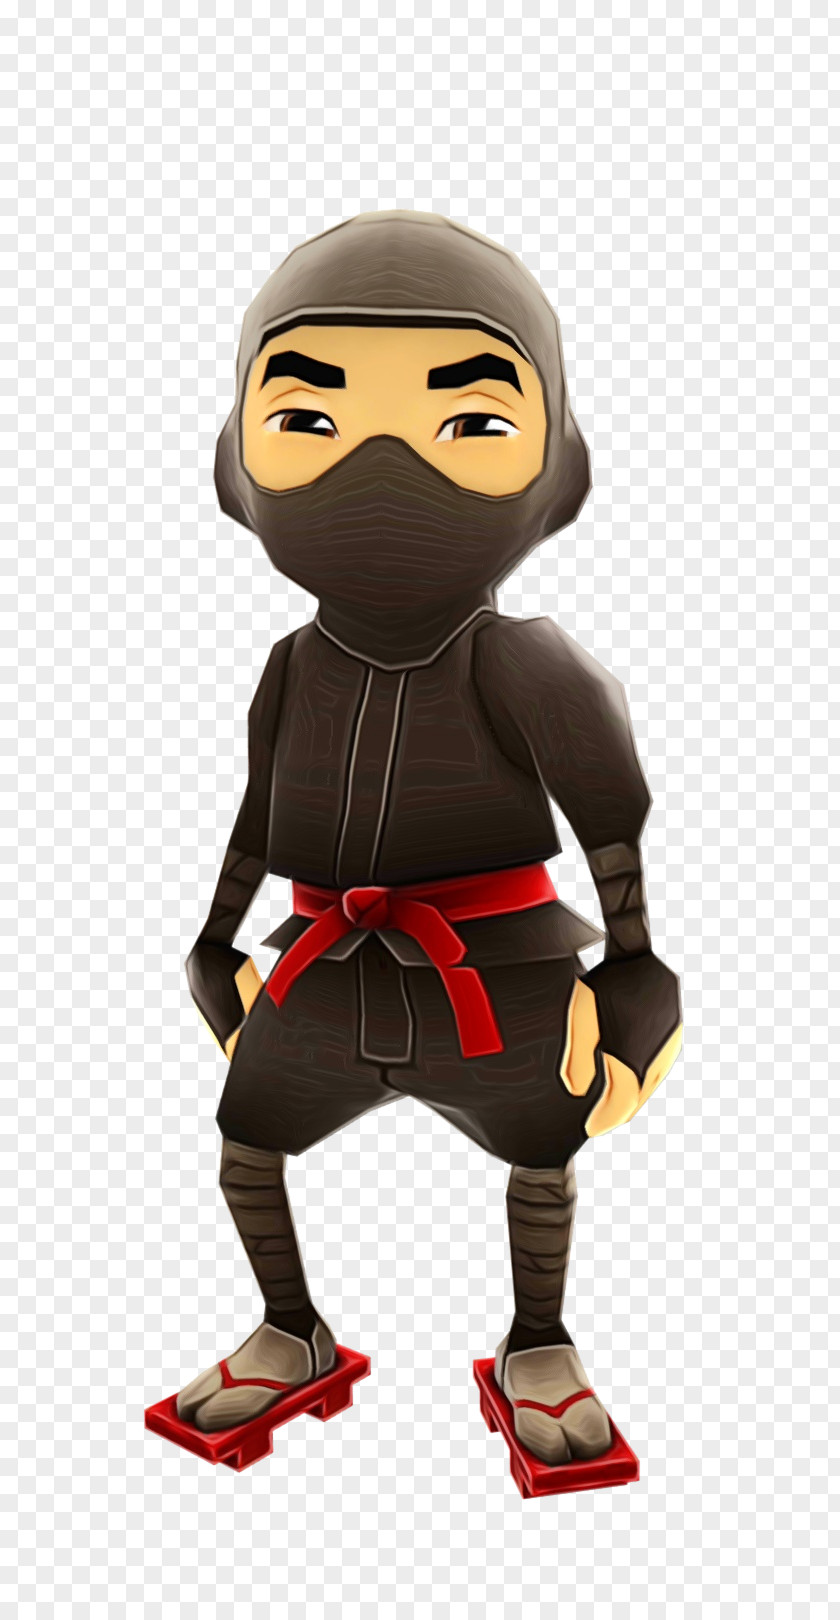 Superhero Figurine Ninja Cartoon PNG